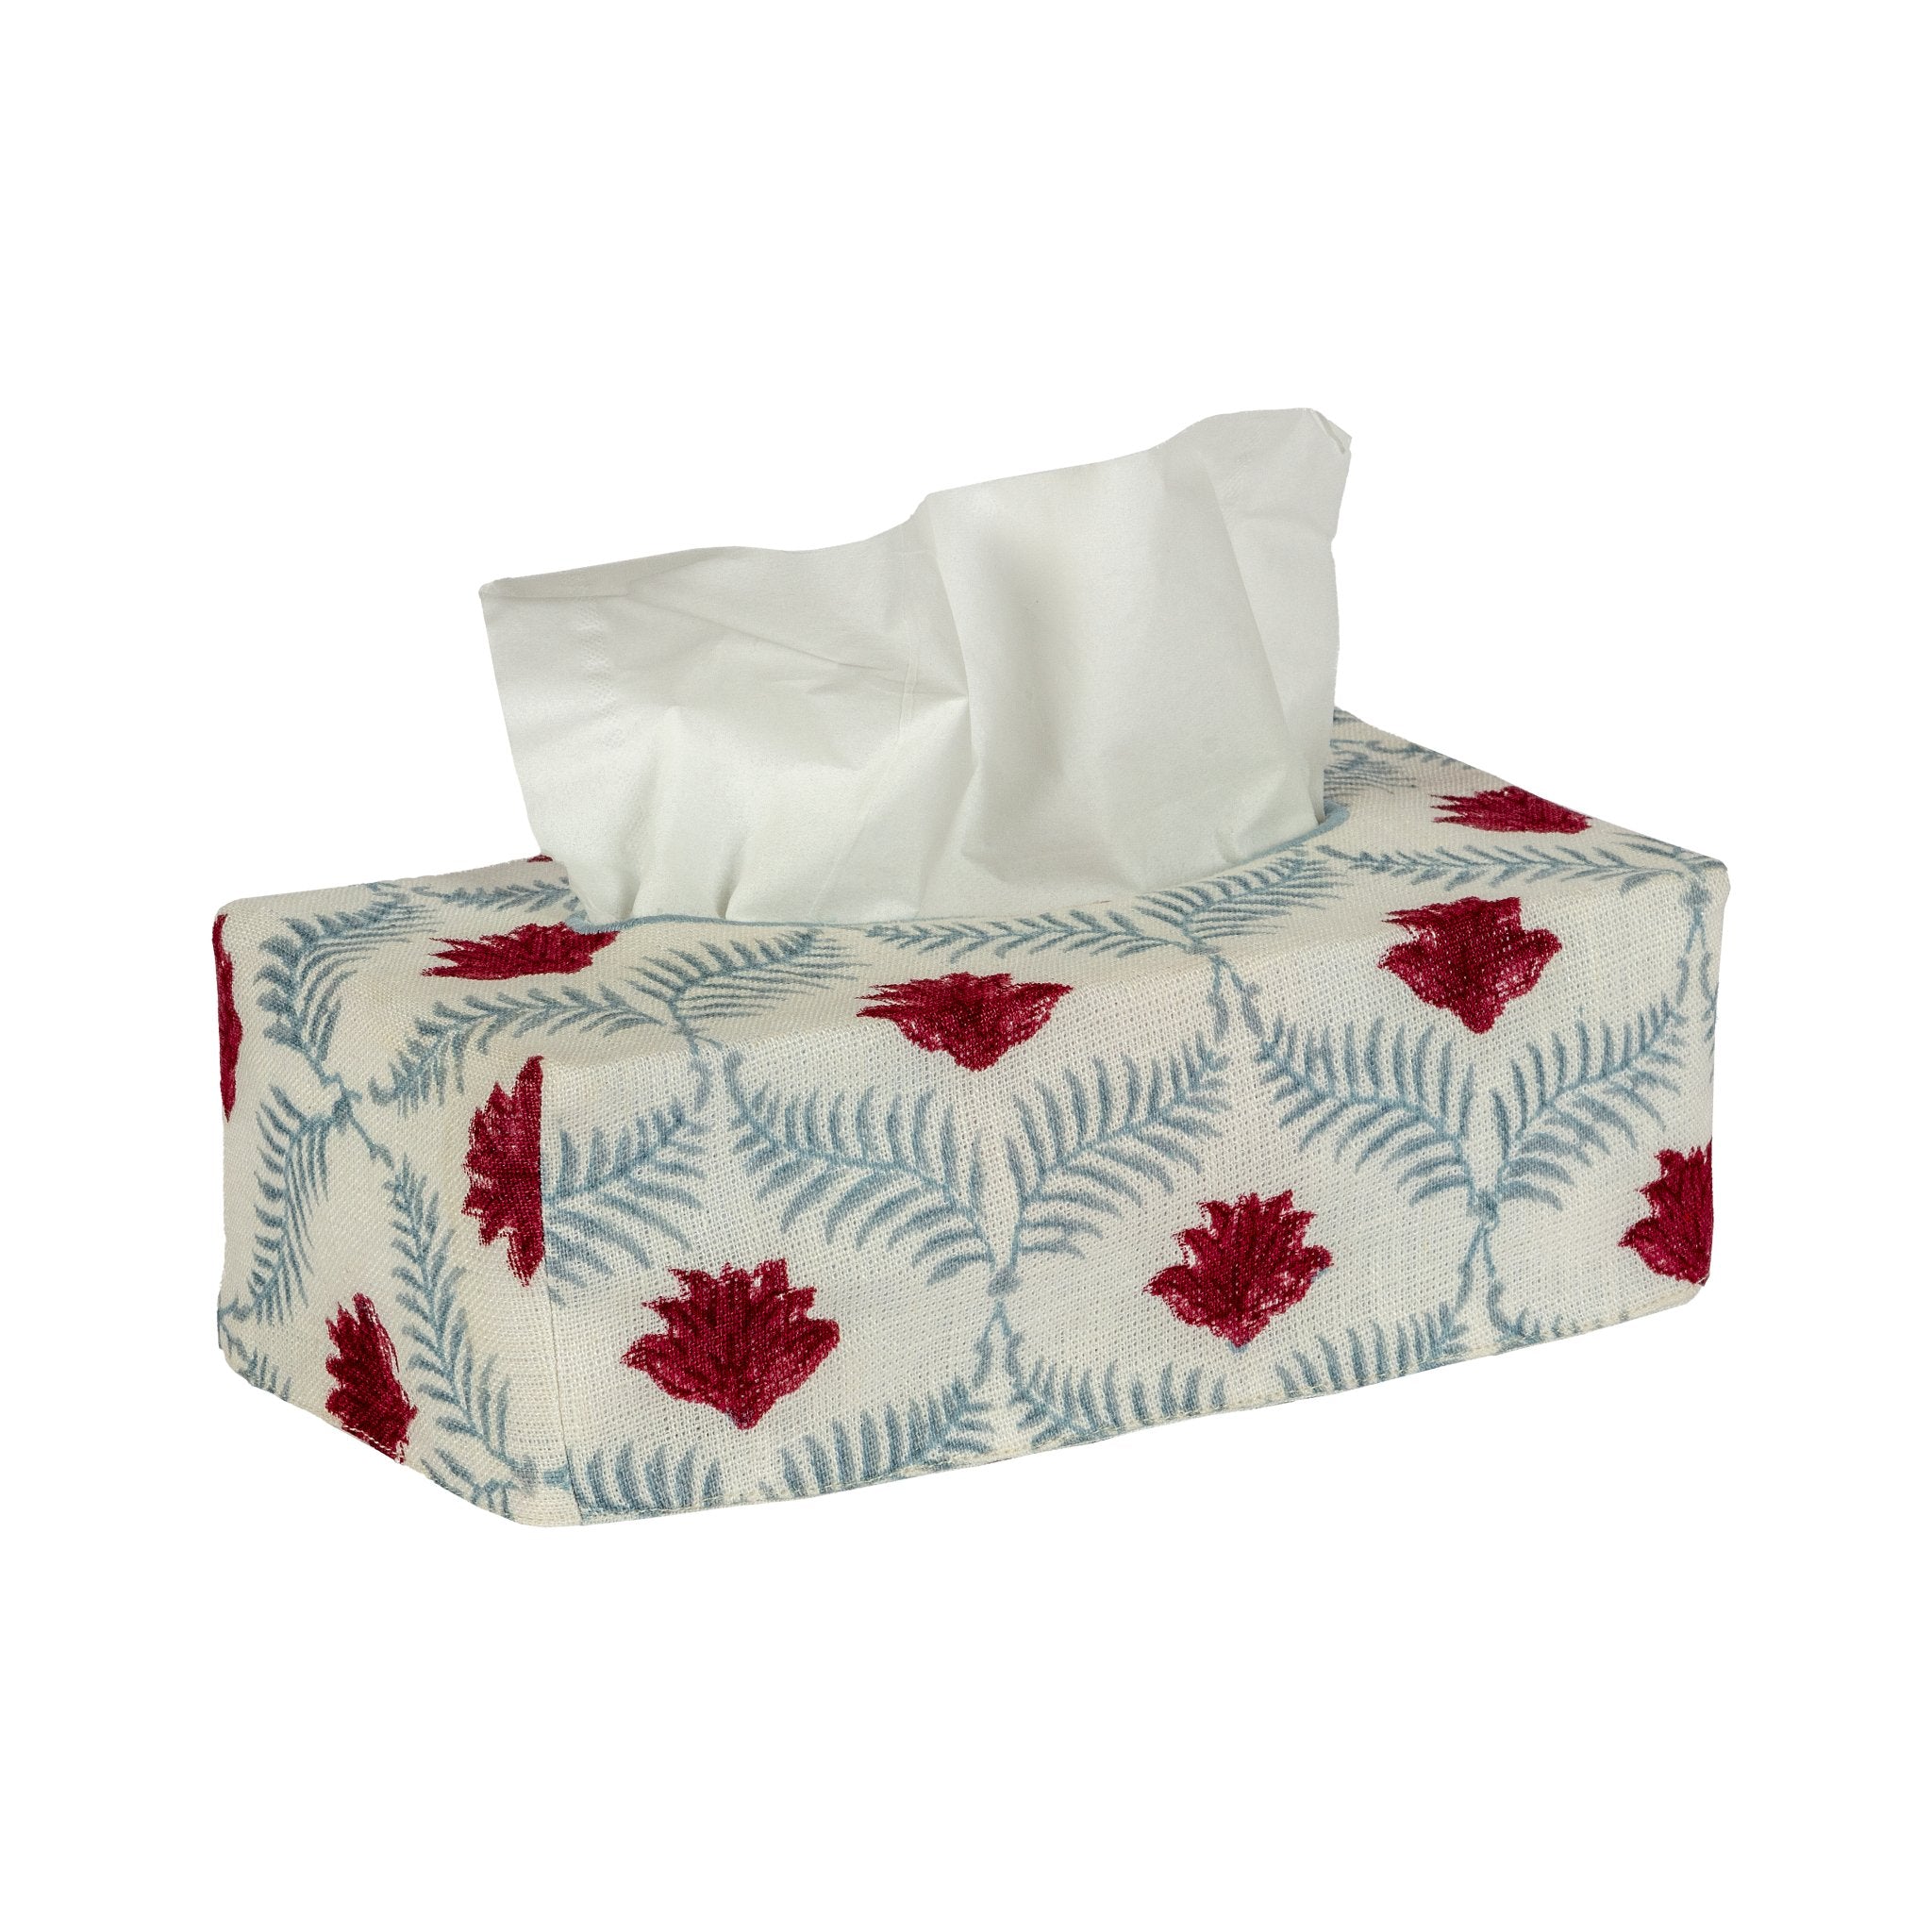 The OG Linen Tissue Box Cover - Alice Palmer & Co